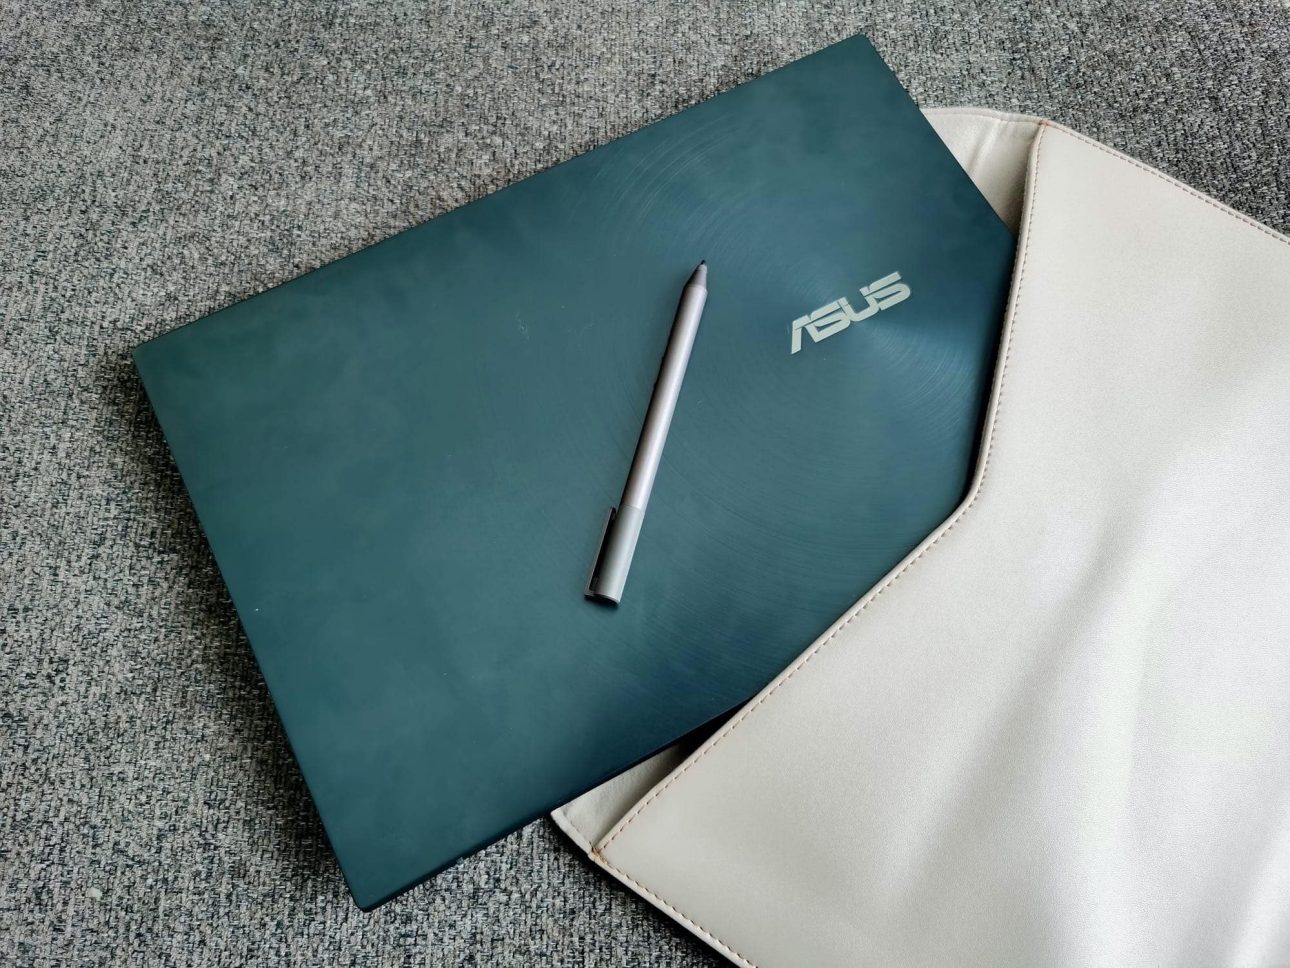 รีวิว ASUS ZenBook Duo นวัตกรรมโน้ตบุ๊ค 2 หน้าจอ กับ Intel Core i Gen 10 ในราคาที่จับต้องได้ 39